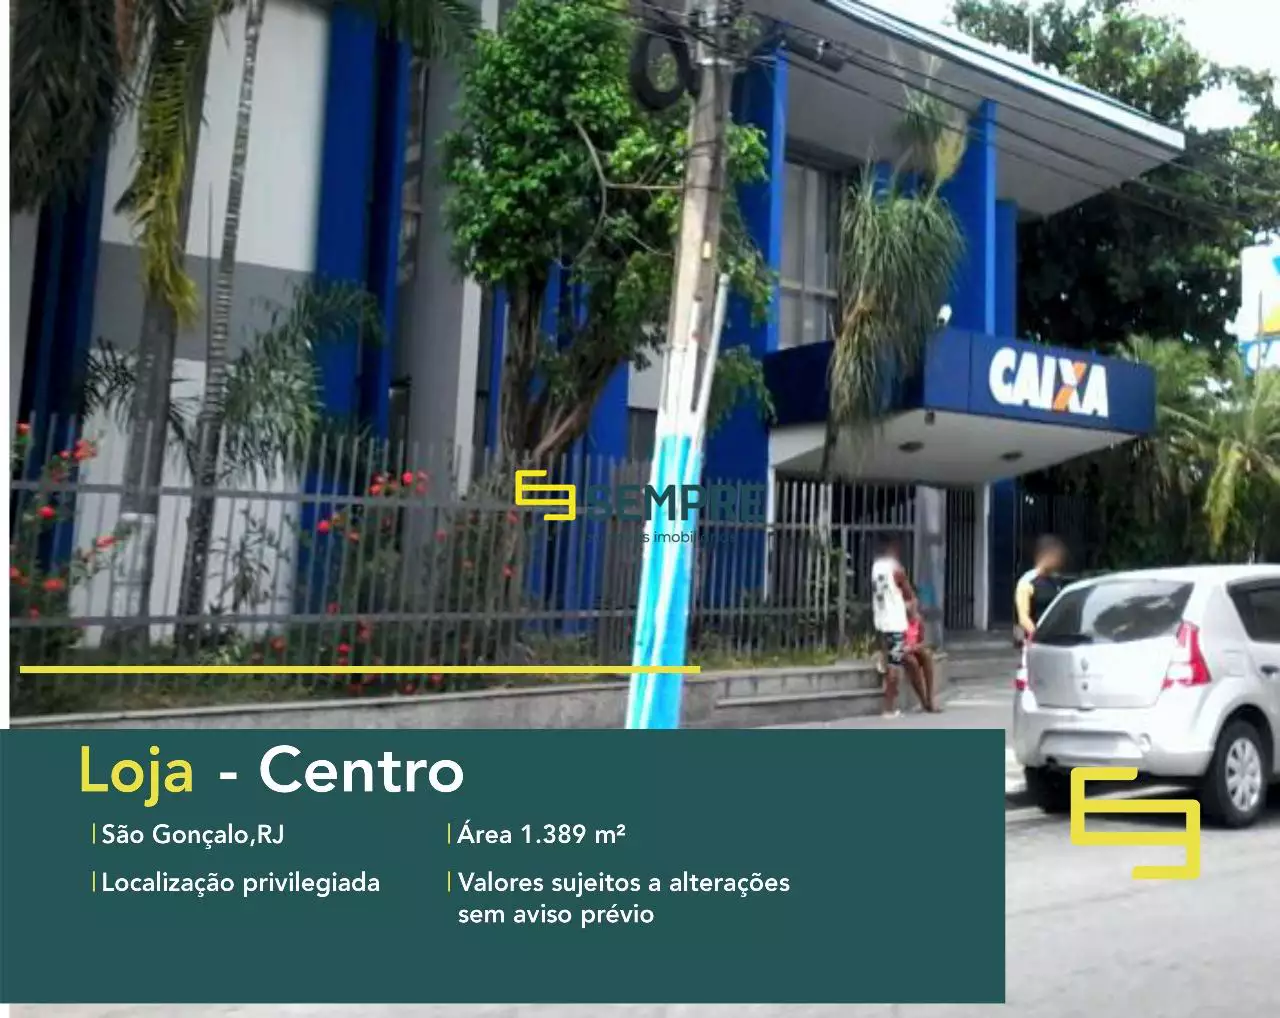 Loja em São Gonçalo à venda no Rio de Janeiro - Centro, em excelente localização. O estabelecimento comercial conta com área de 1.389 m².